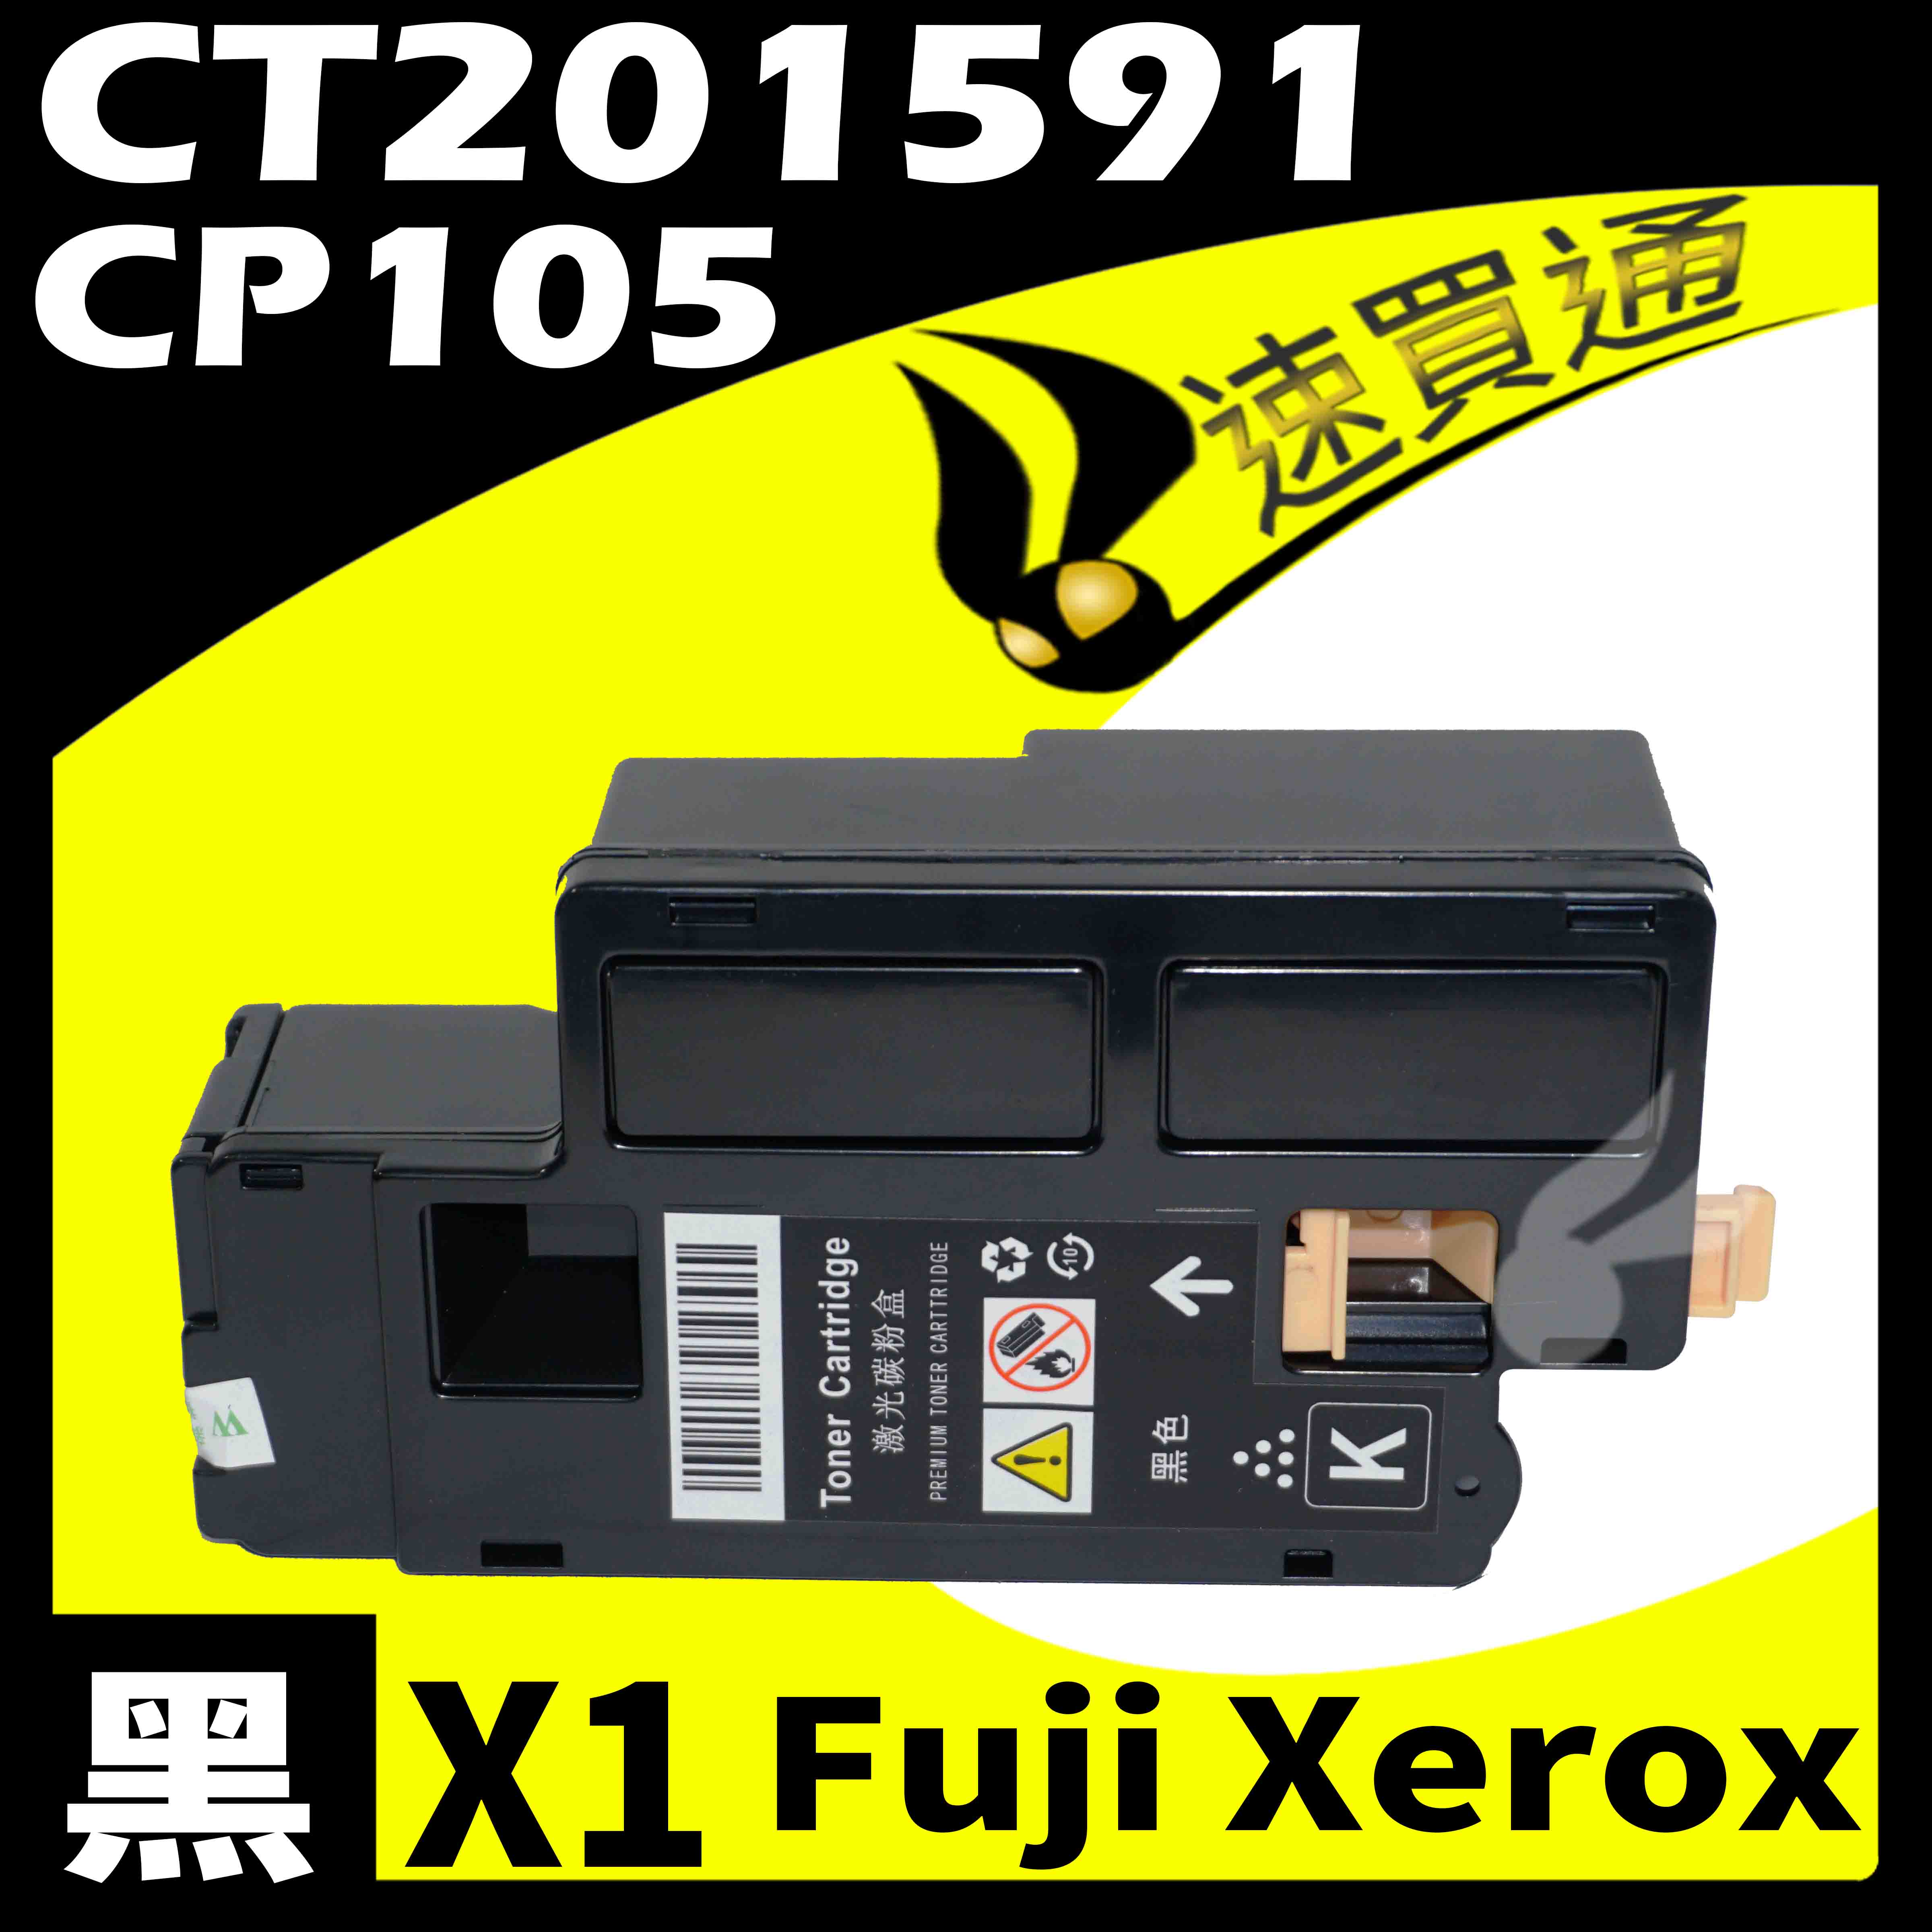 【速買通】Fuji Xerox CP105/CT201591 黑 相容彩色碳粉匣